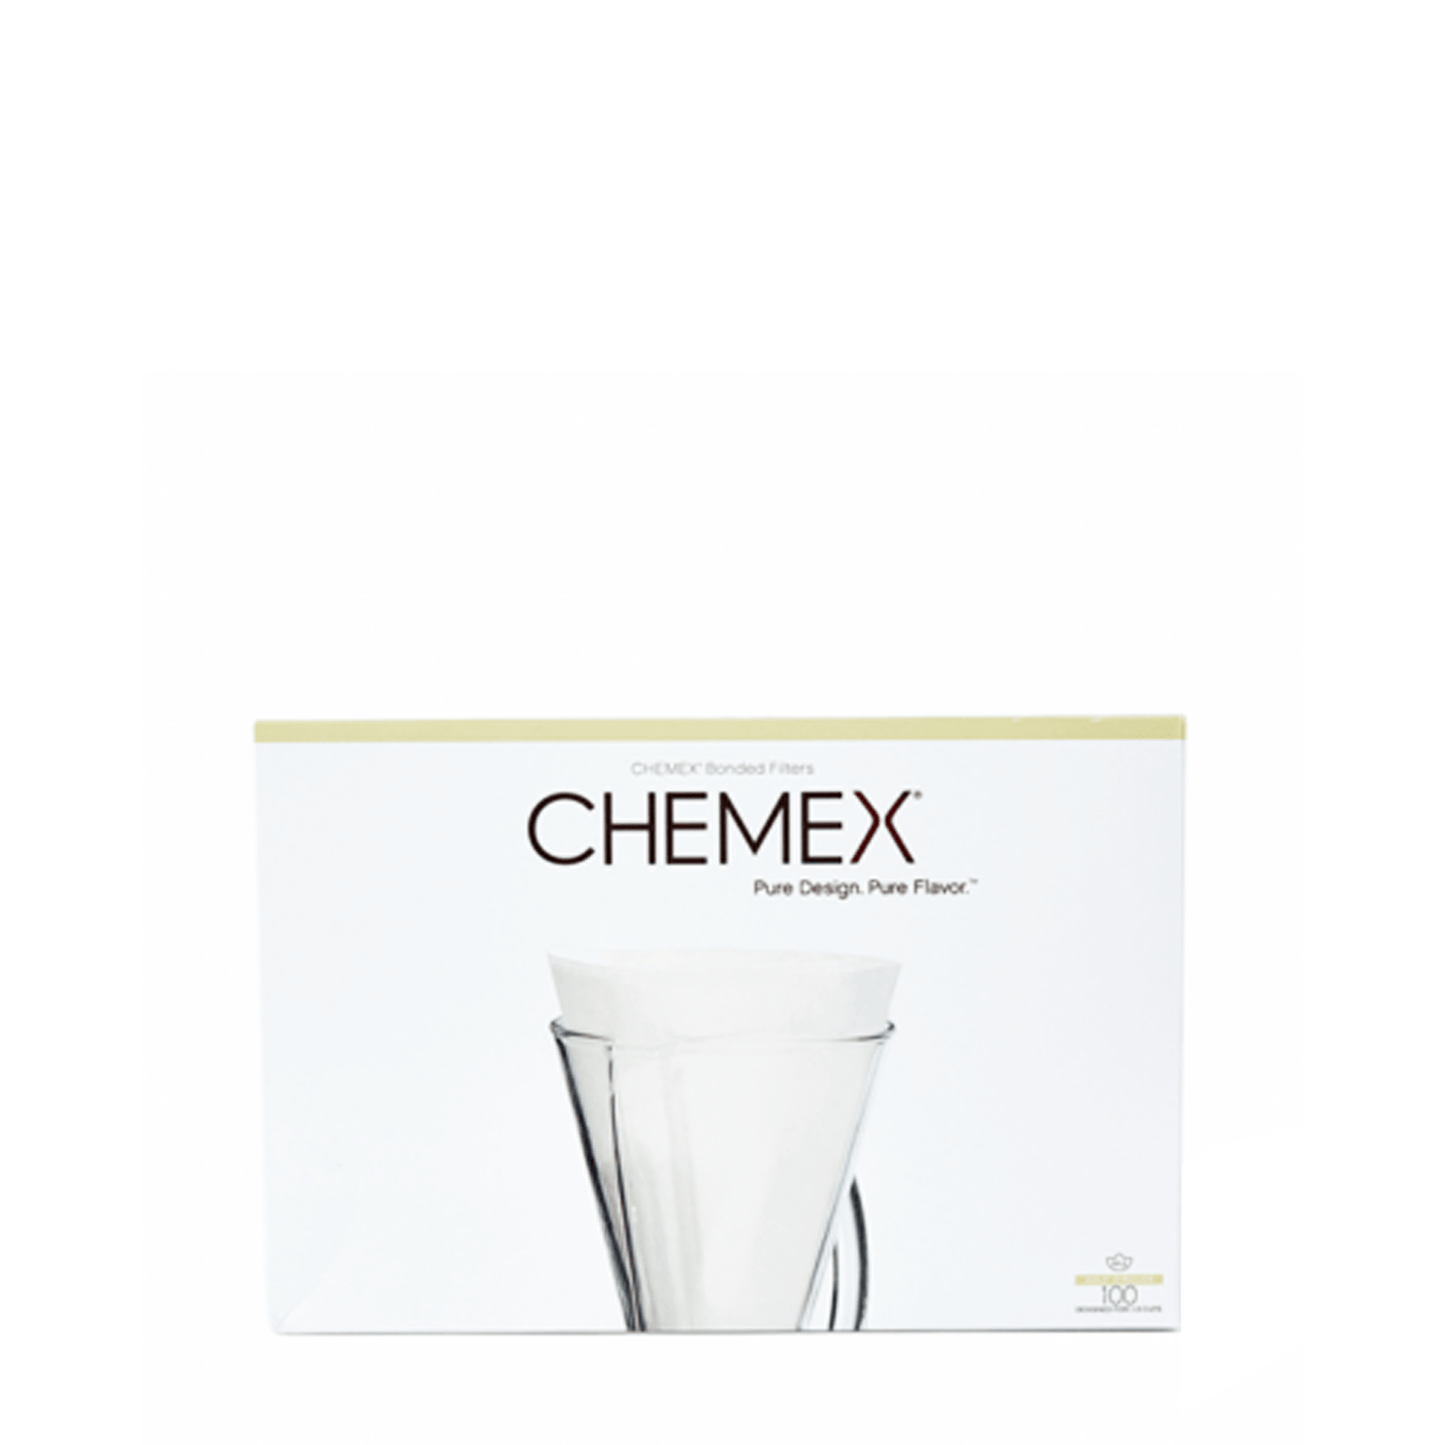 Filtros Chemex 3 ou 6 Cup